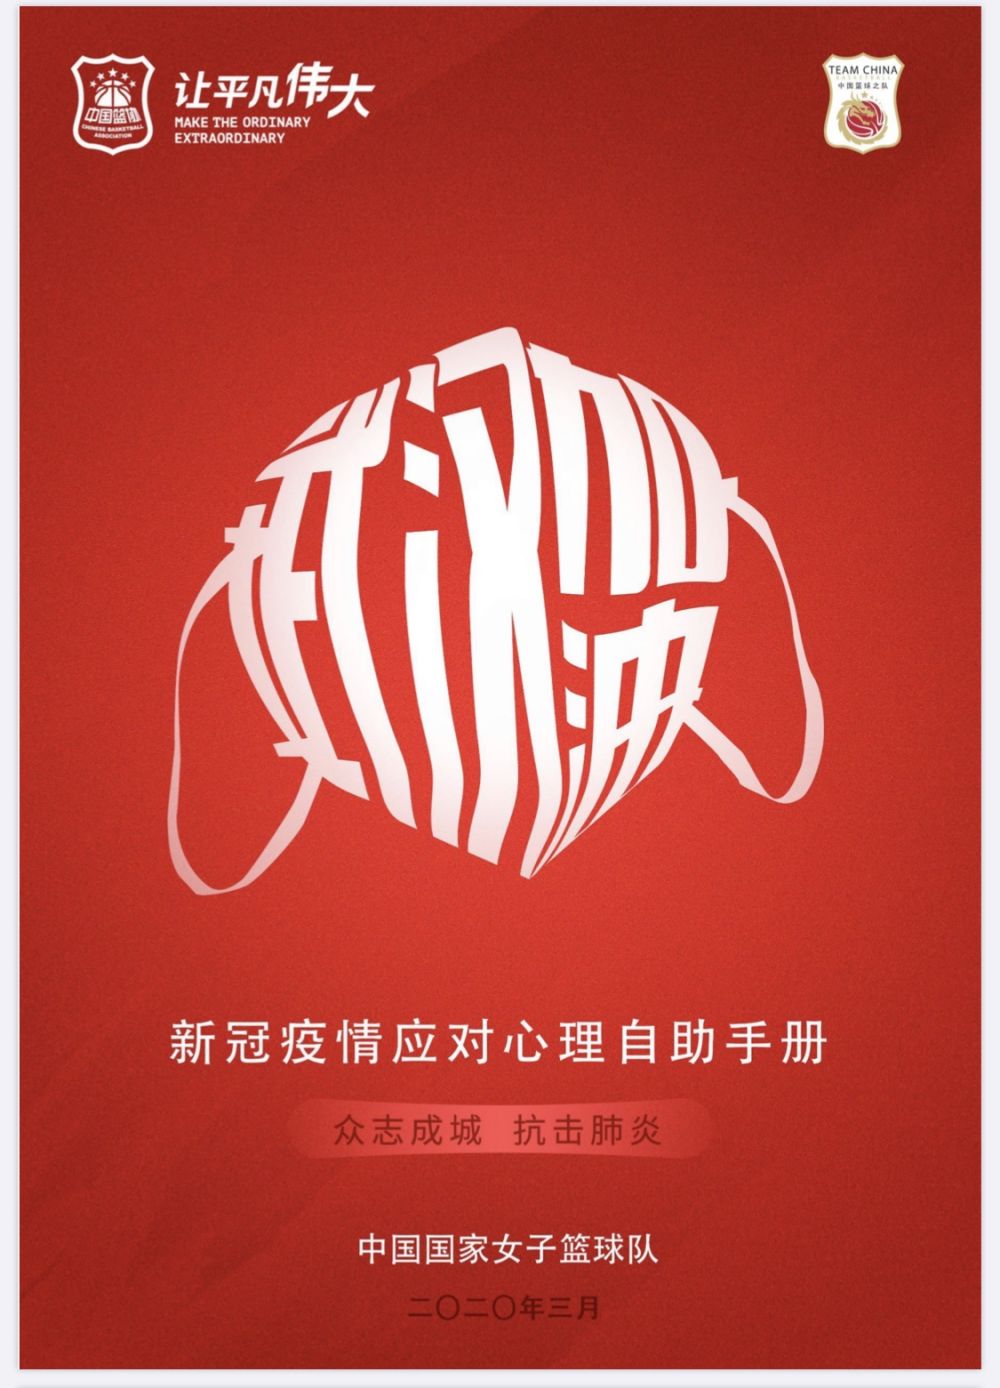  中国女篮给每名队员下发了疫情应对心理自助手册，为队员们疫情期间的训练生活提供指导借鉴。